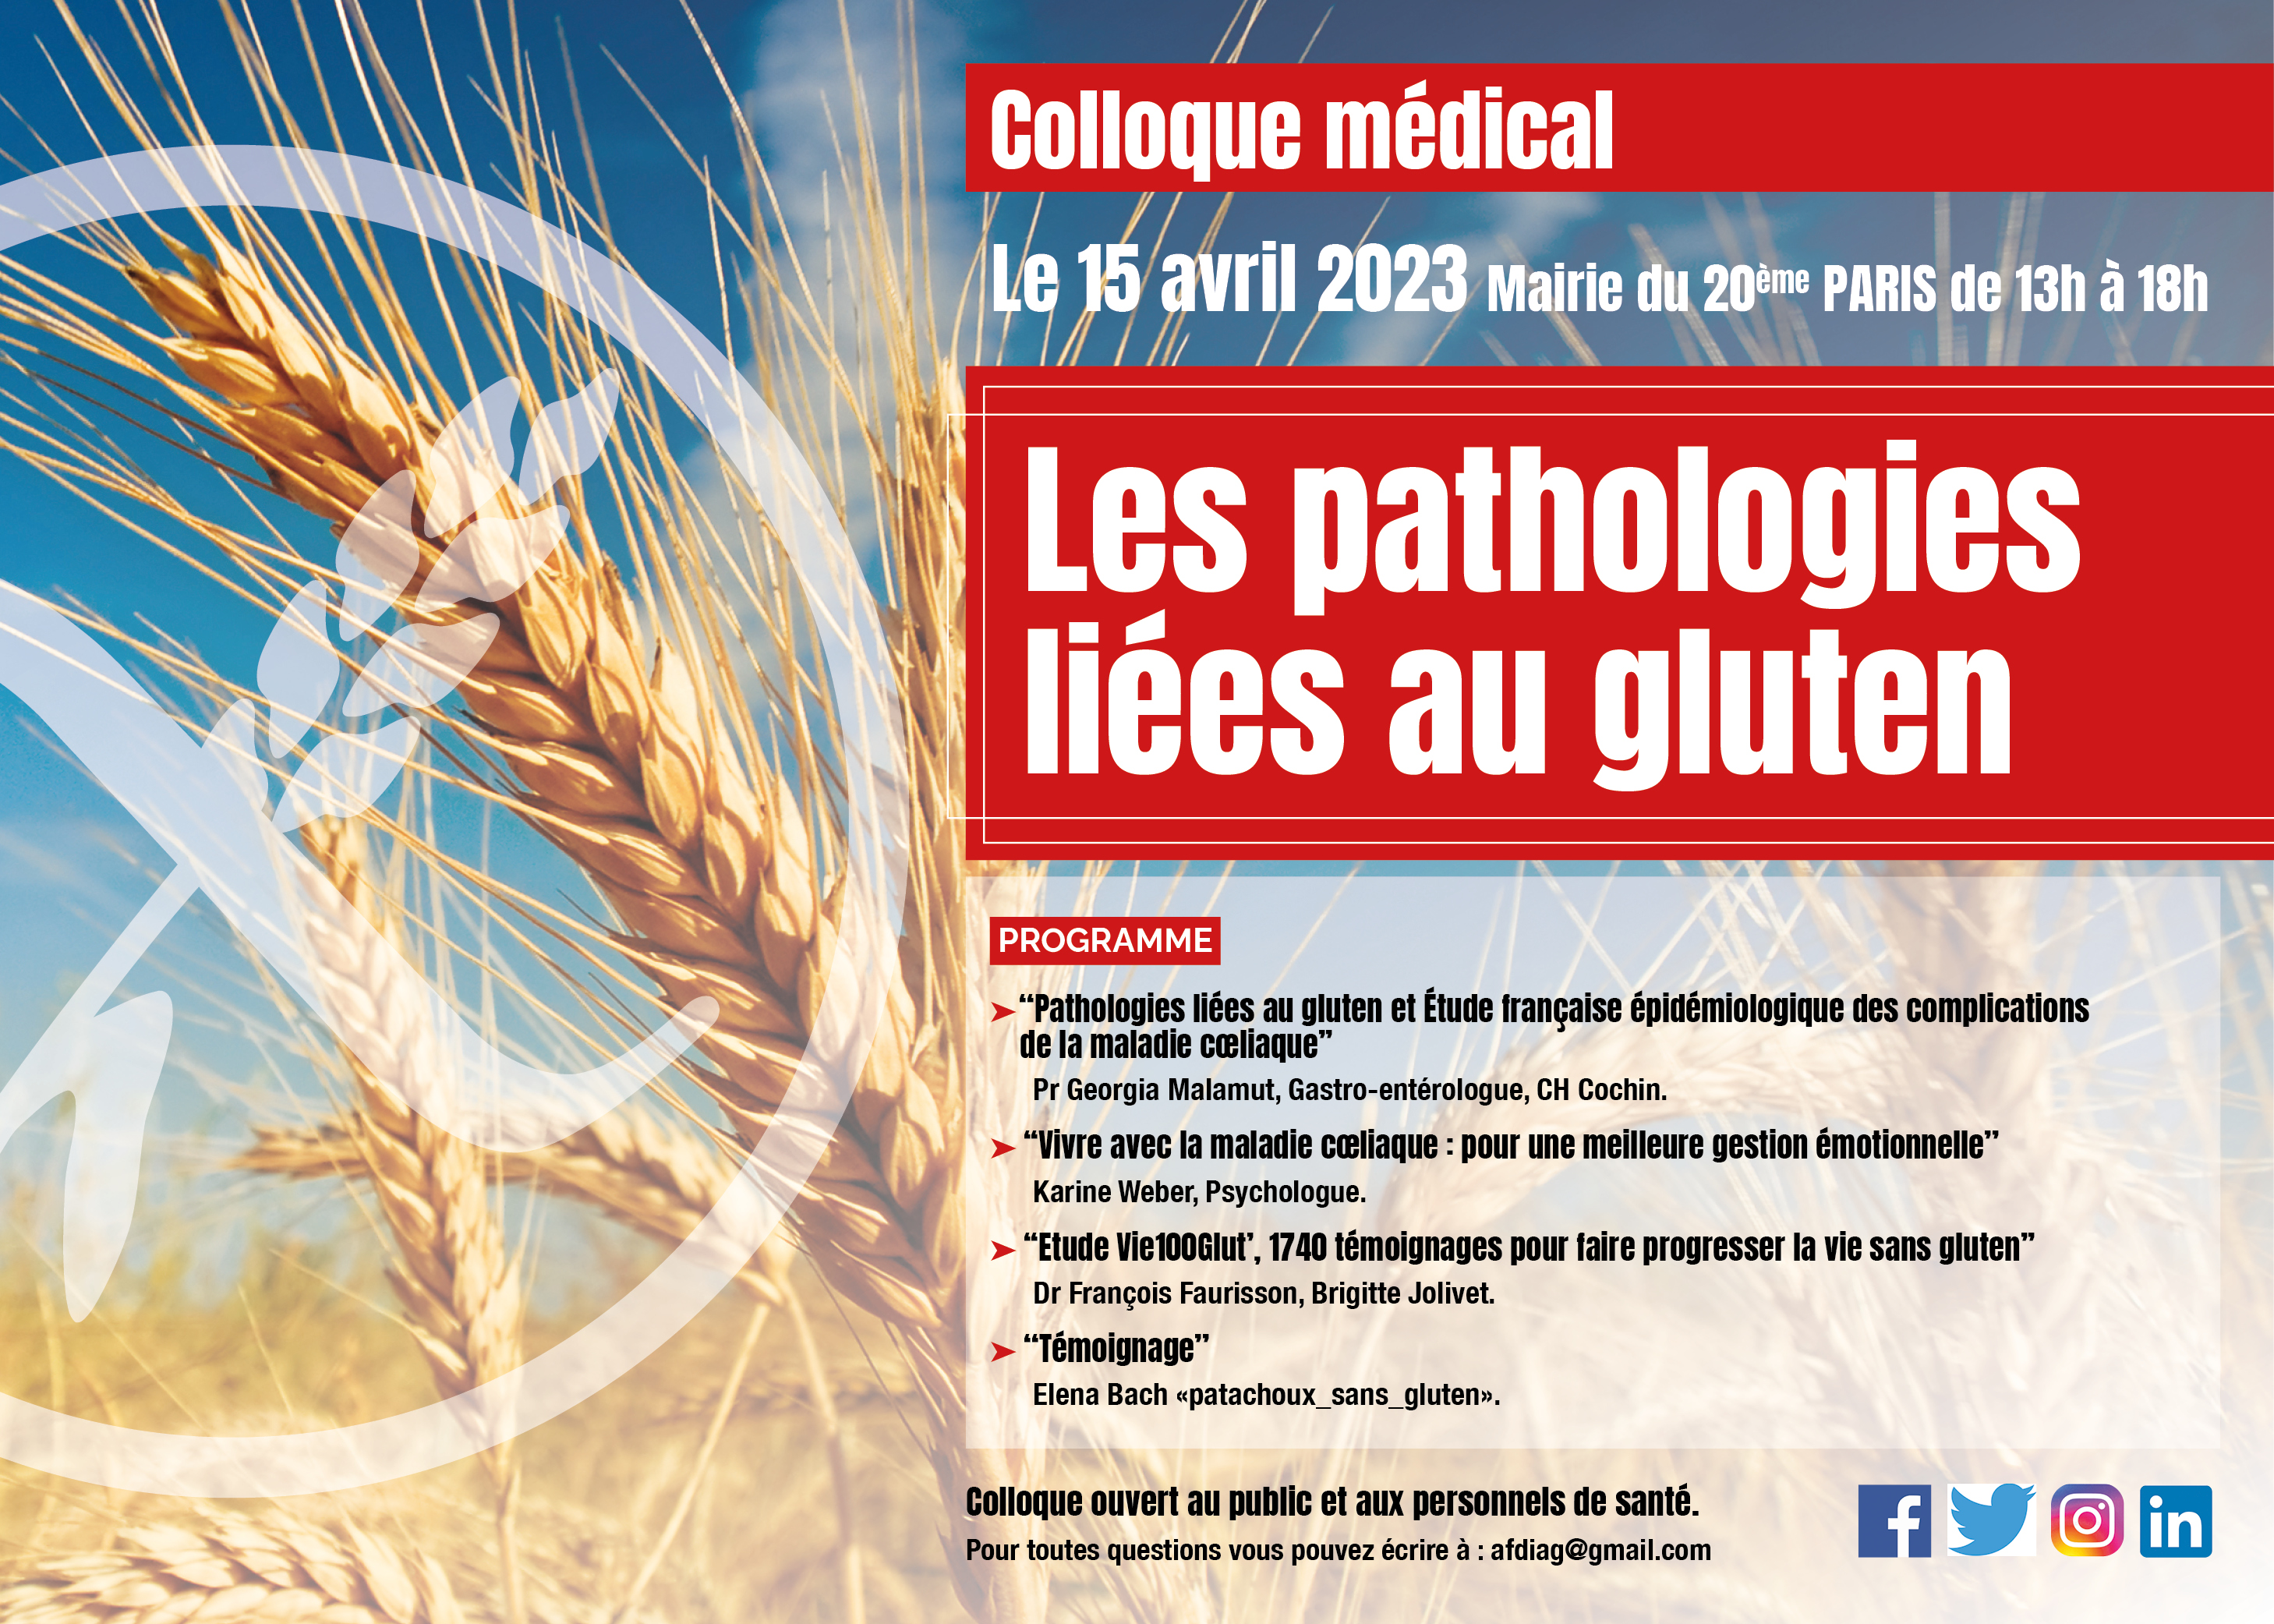 Colloque médical de Paris 2023